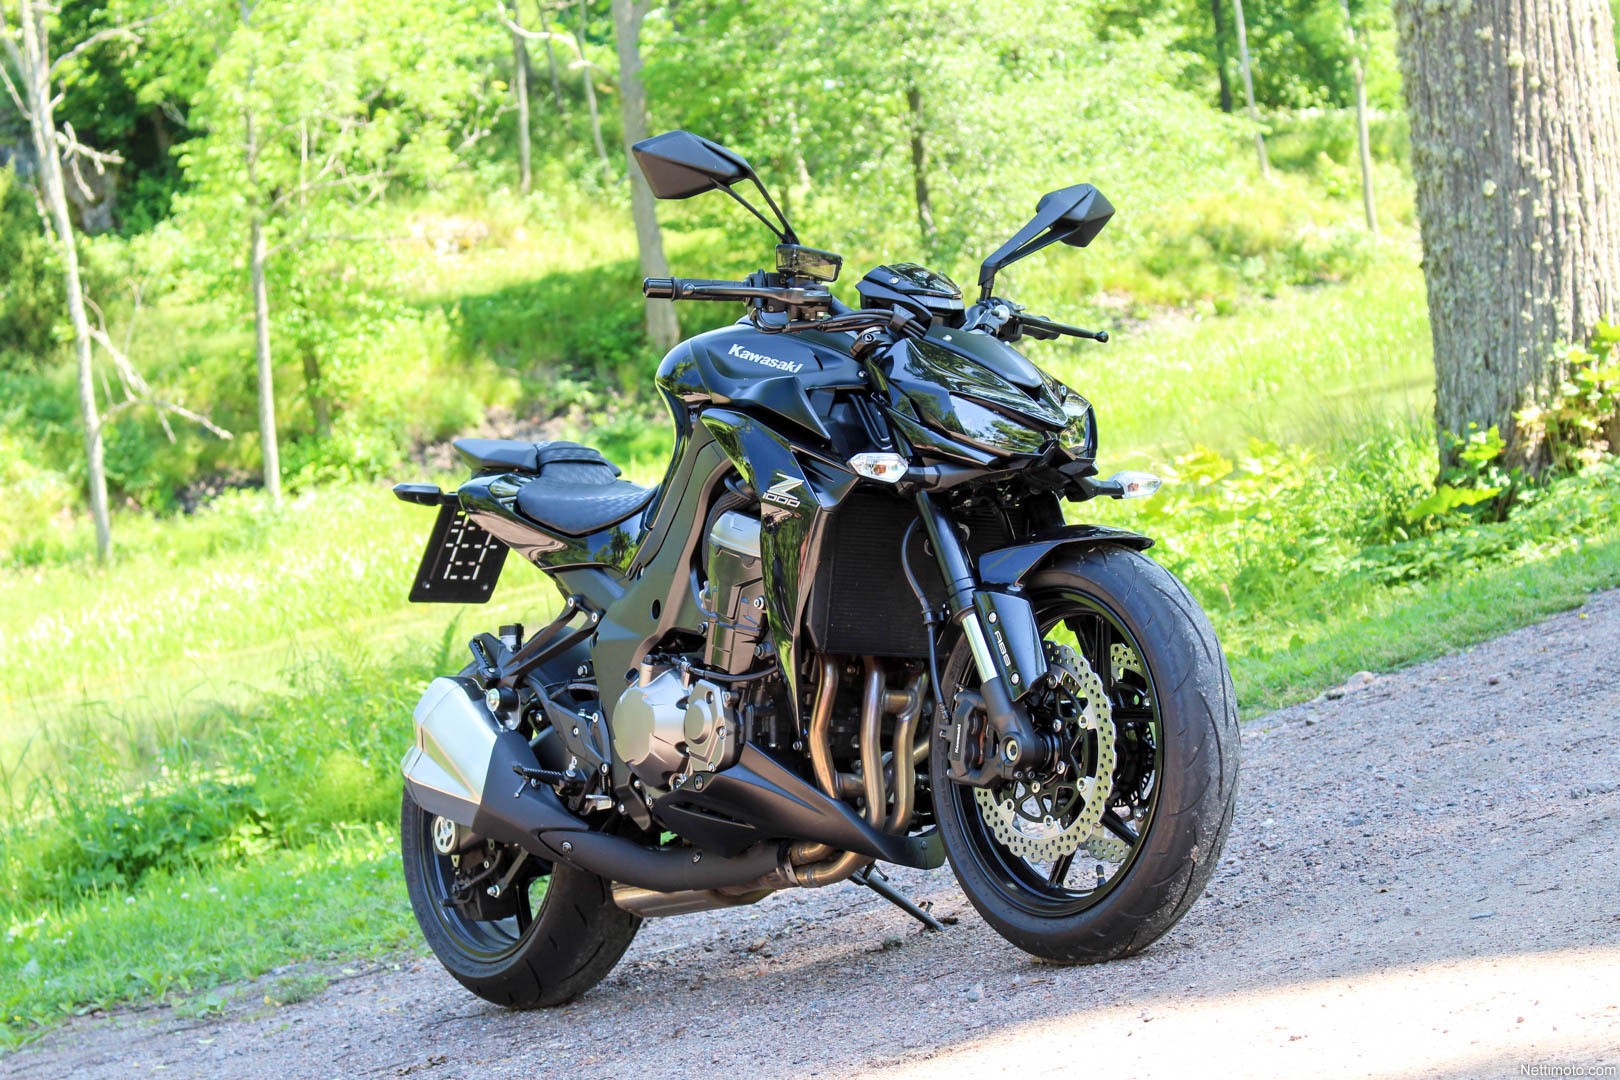 Kawasaki Z1000 — мотоцикл дорожного класса